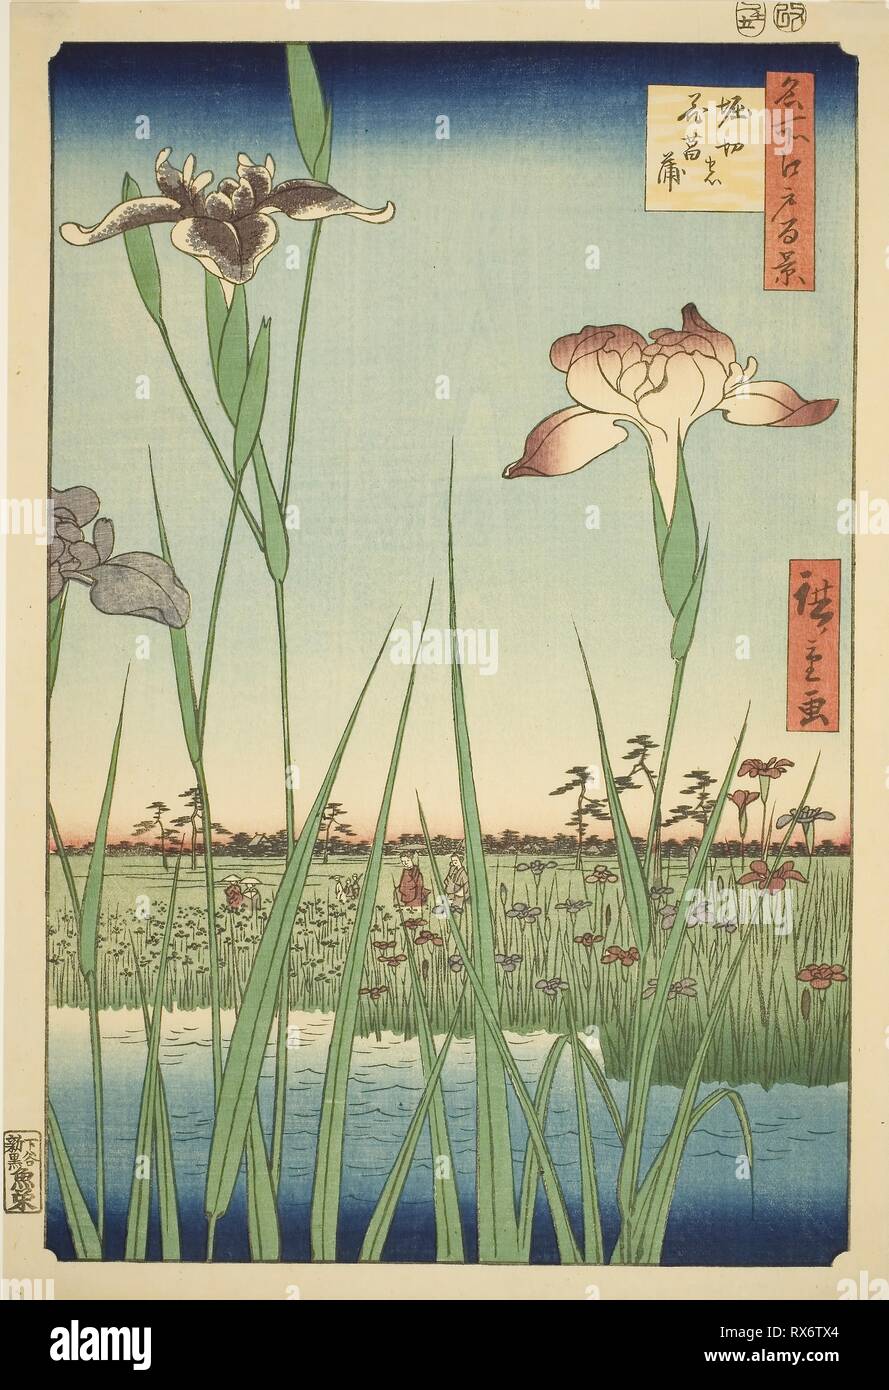 À l'iris (Horikiri Horikiri pas hanashobu), à partir de la série "Cent vues célèbres d'Edo (Edo Meisho hyakkei)'. Utagawa Hiroshige ? ?  ? ? ; Japonais, 1797-1858. Date : 1857. Dimensions : 36 x 24,5 cm (14 3/16 x 9 5/8 in.). Gravure sur bois en couleur ; Oban. Origine : Japon. Musée : le Chicago Art Institute. Auteur : Utagawa Hiroshige. publié par Uoya Eikichi Hiroshige Utagawa I. Banque D'Images